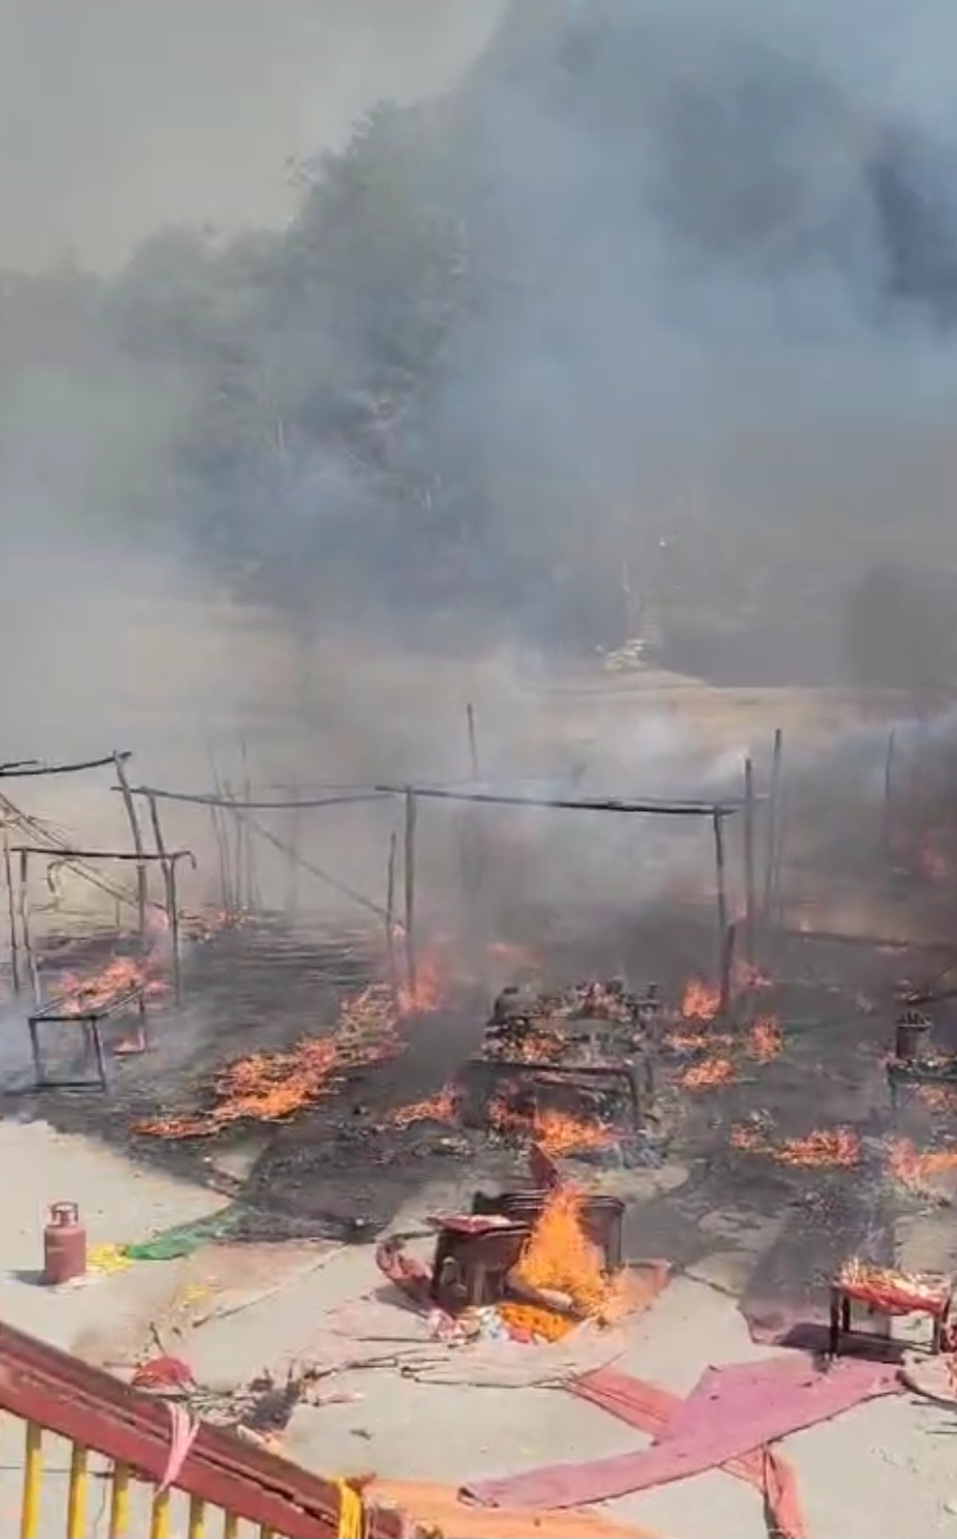 गर्जिया मंदिर परिसर में दोपहर को अचानक आग लग गई, दर्जनों प्रसाद की दुकानें जलकर राख,,,।(Video)